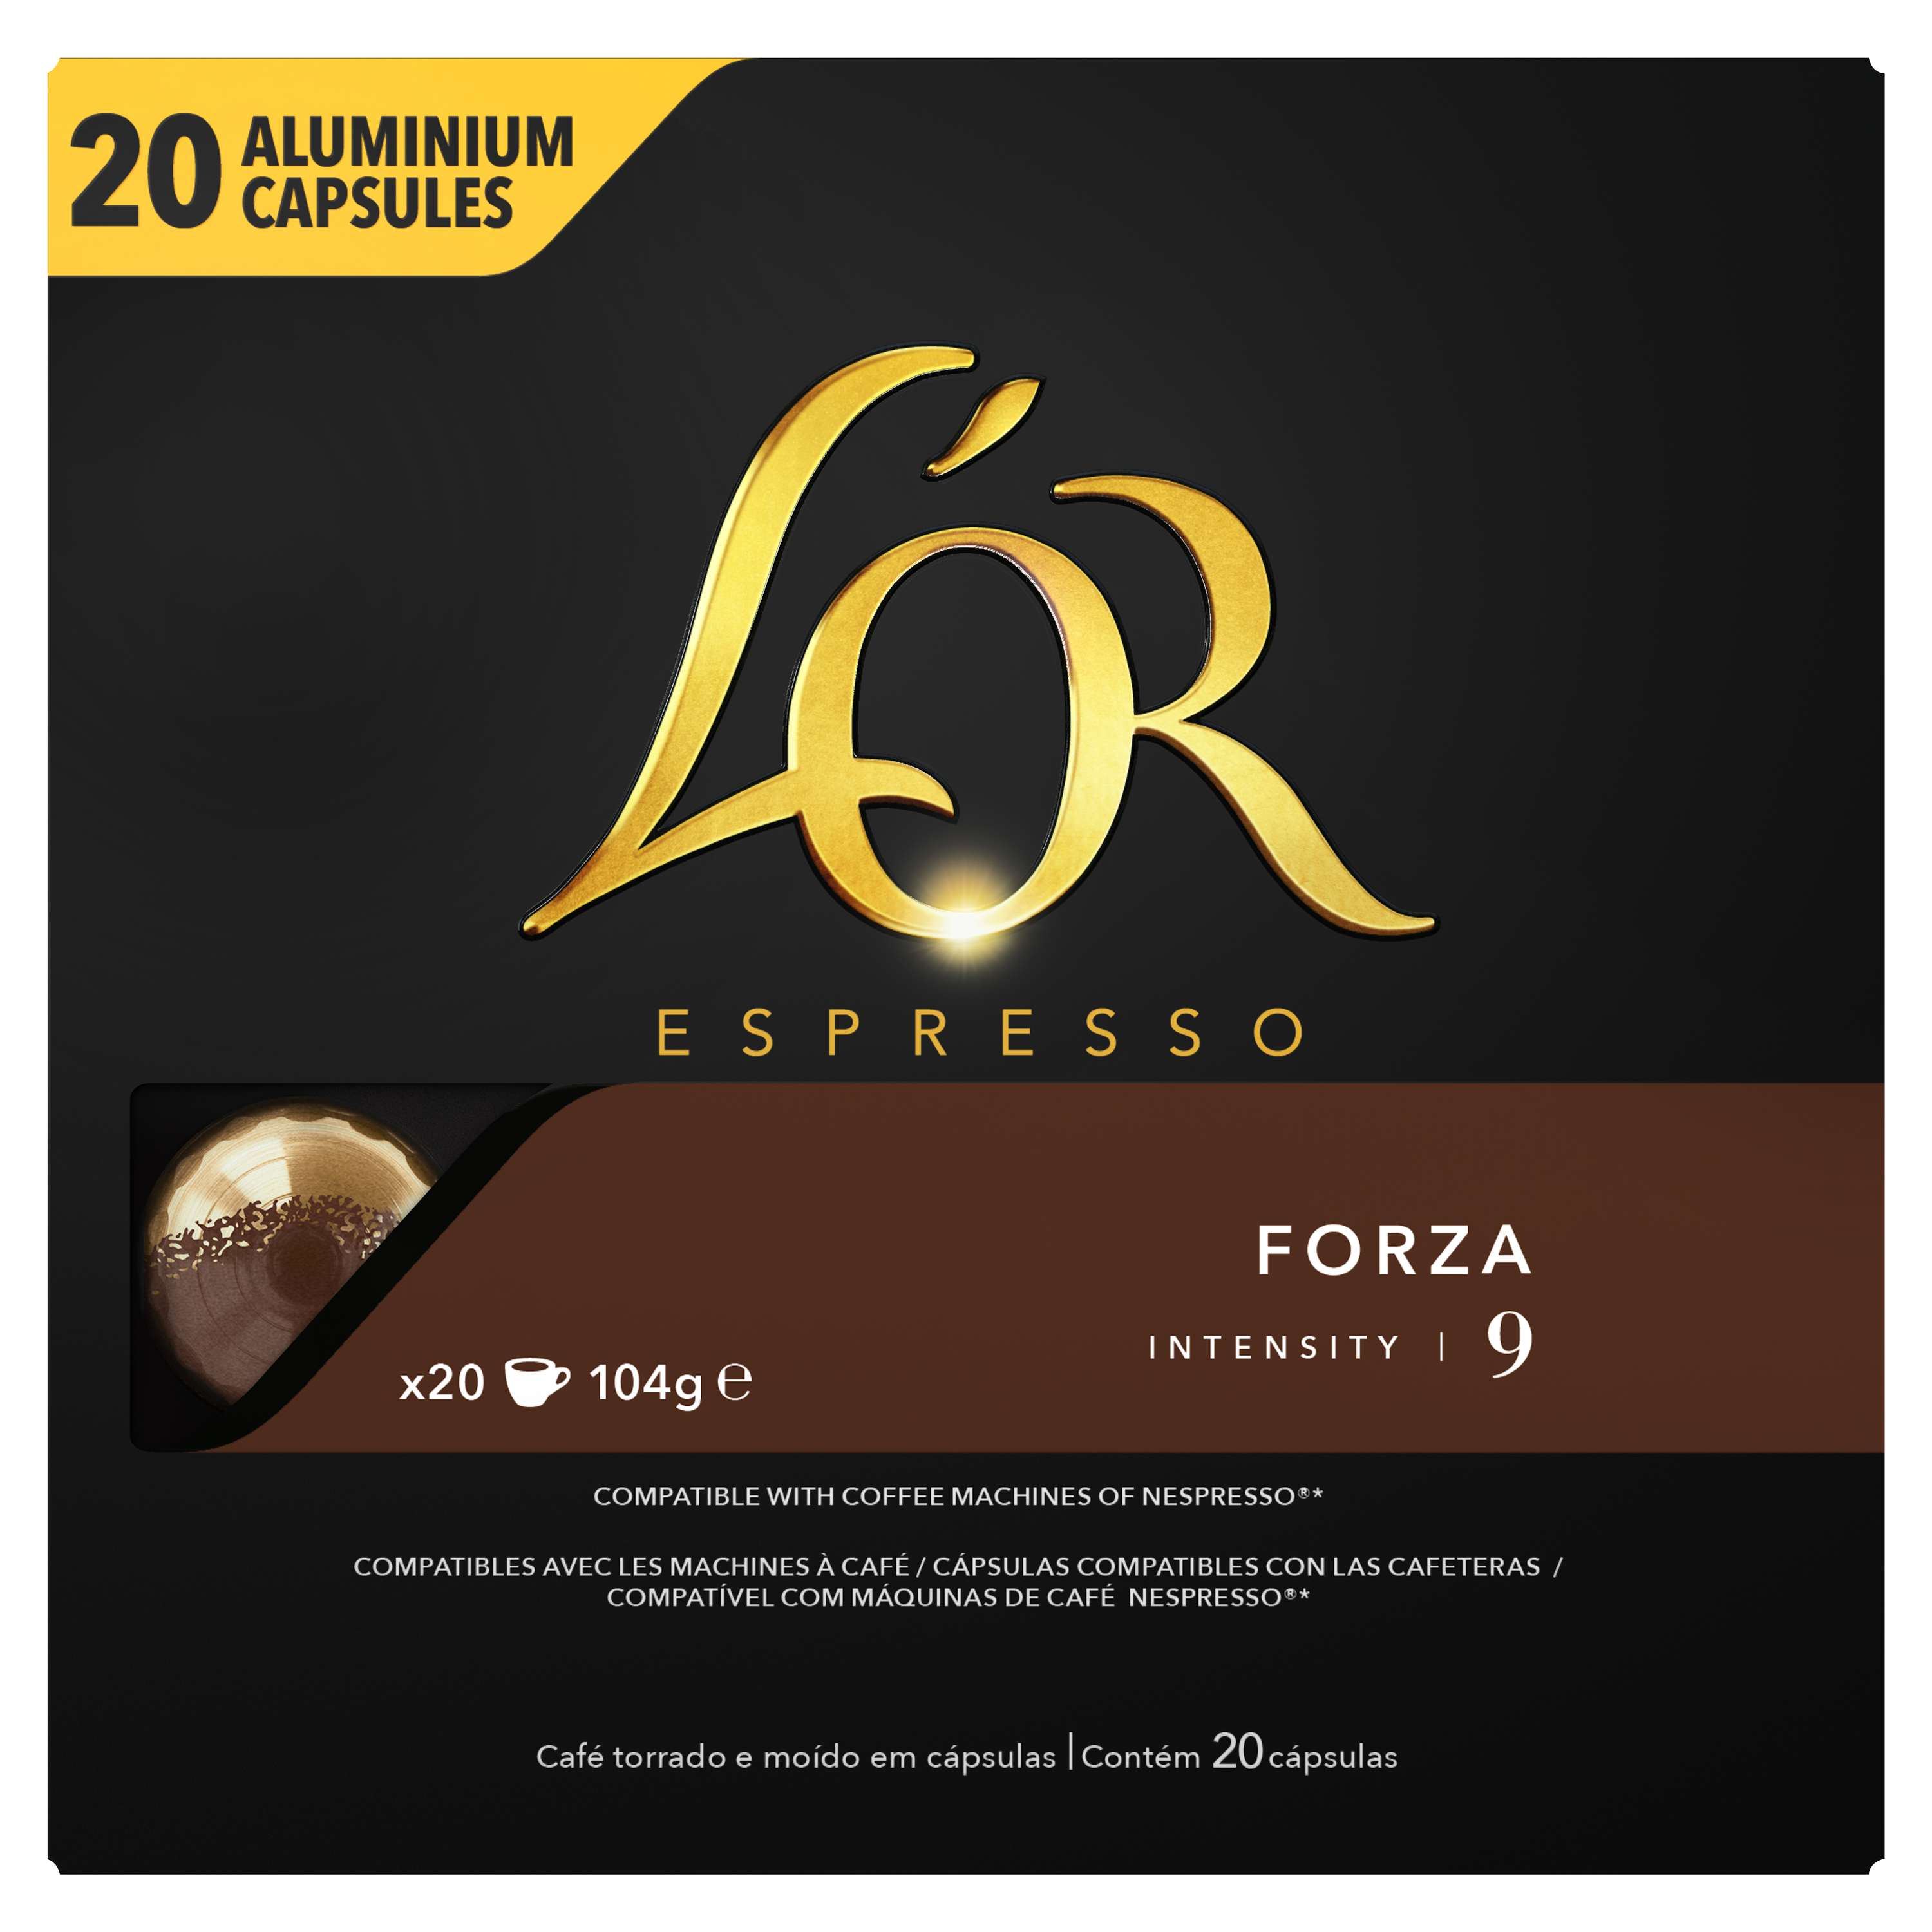 L'OR Espresso Forza x20 capsules